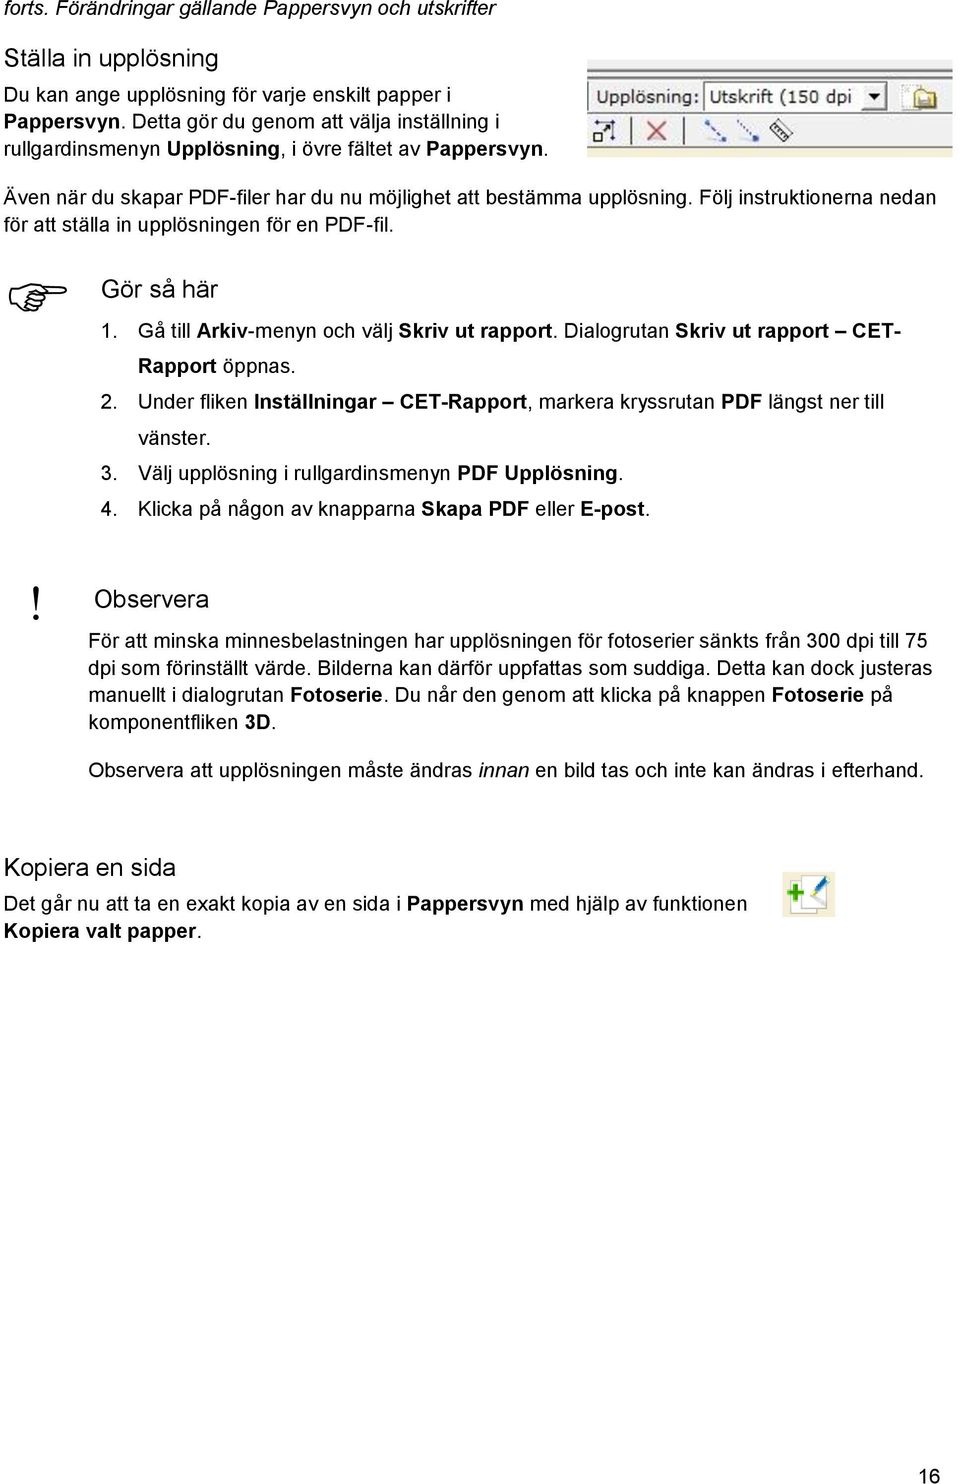 Följ instruktionerna nedan för att ställa in upplösningen för en PDF-fil. 1. Gå till Arkiv-menyn och välj Skriv ut rapport. Dialogrutan Skriv ut rapport CET- Rapport öppnas. 2.